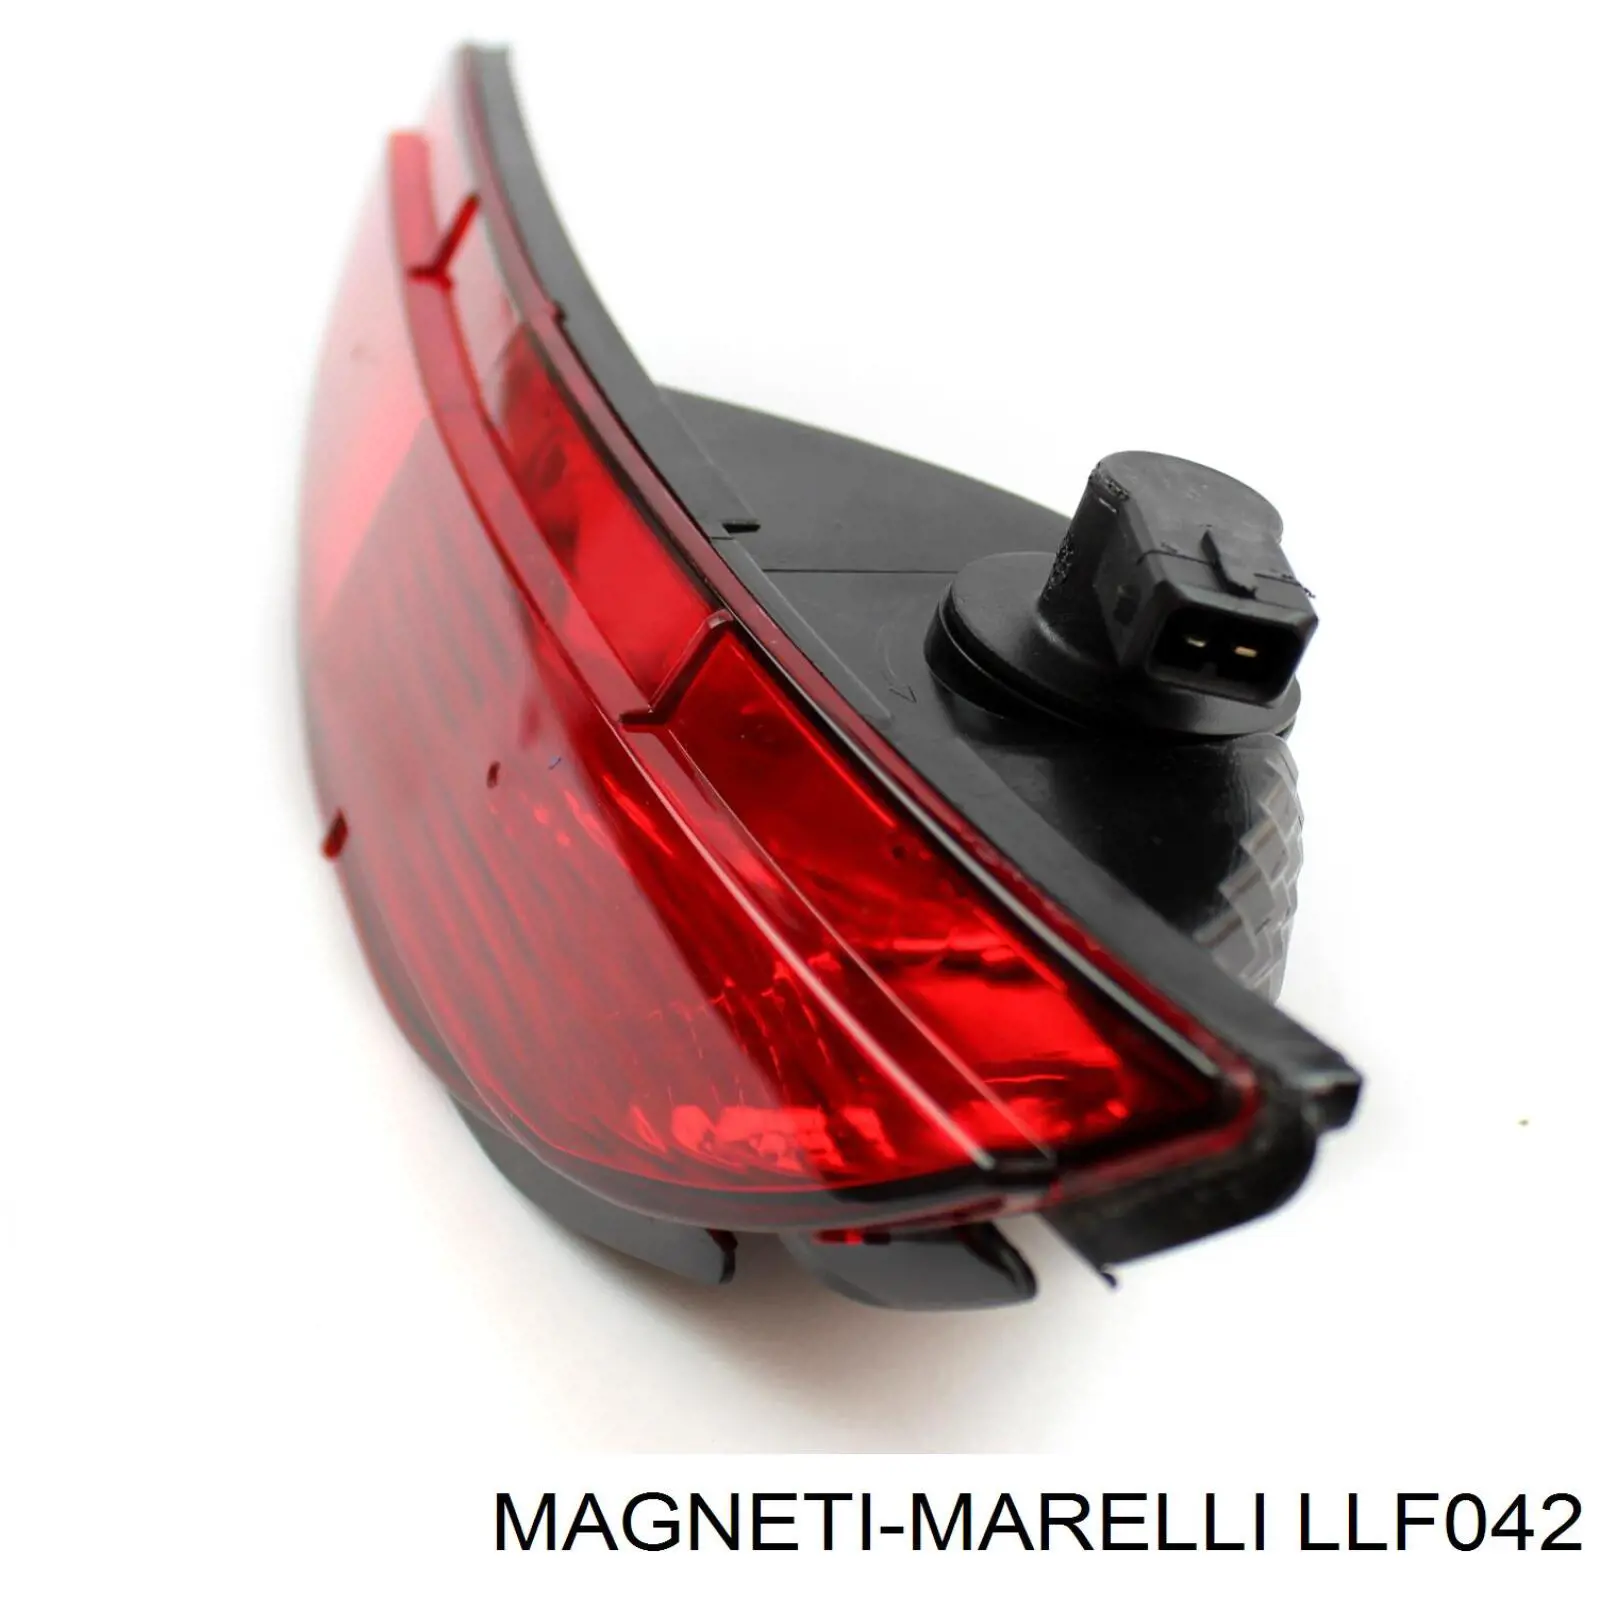 Piloto parachoques trasero izquierdo LLF042 Magneti Marelli